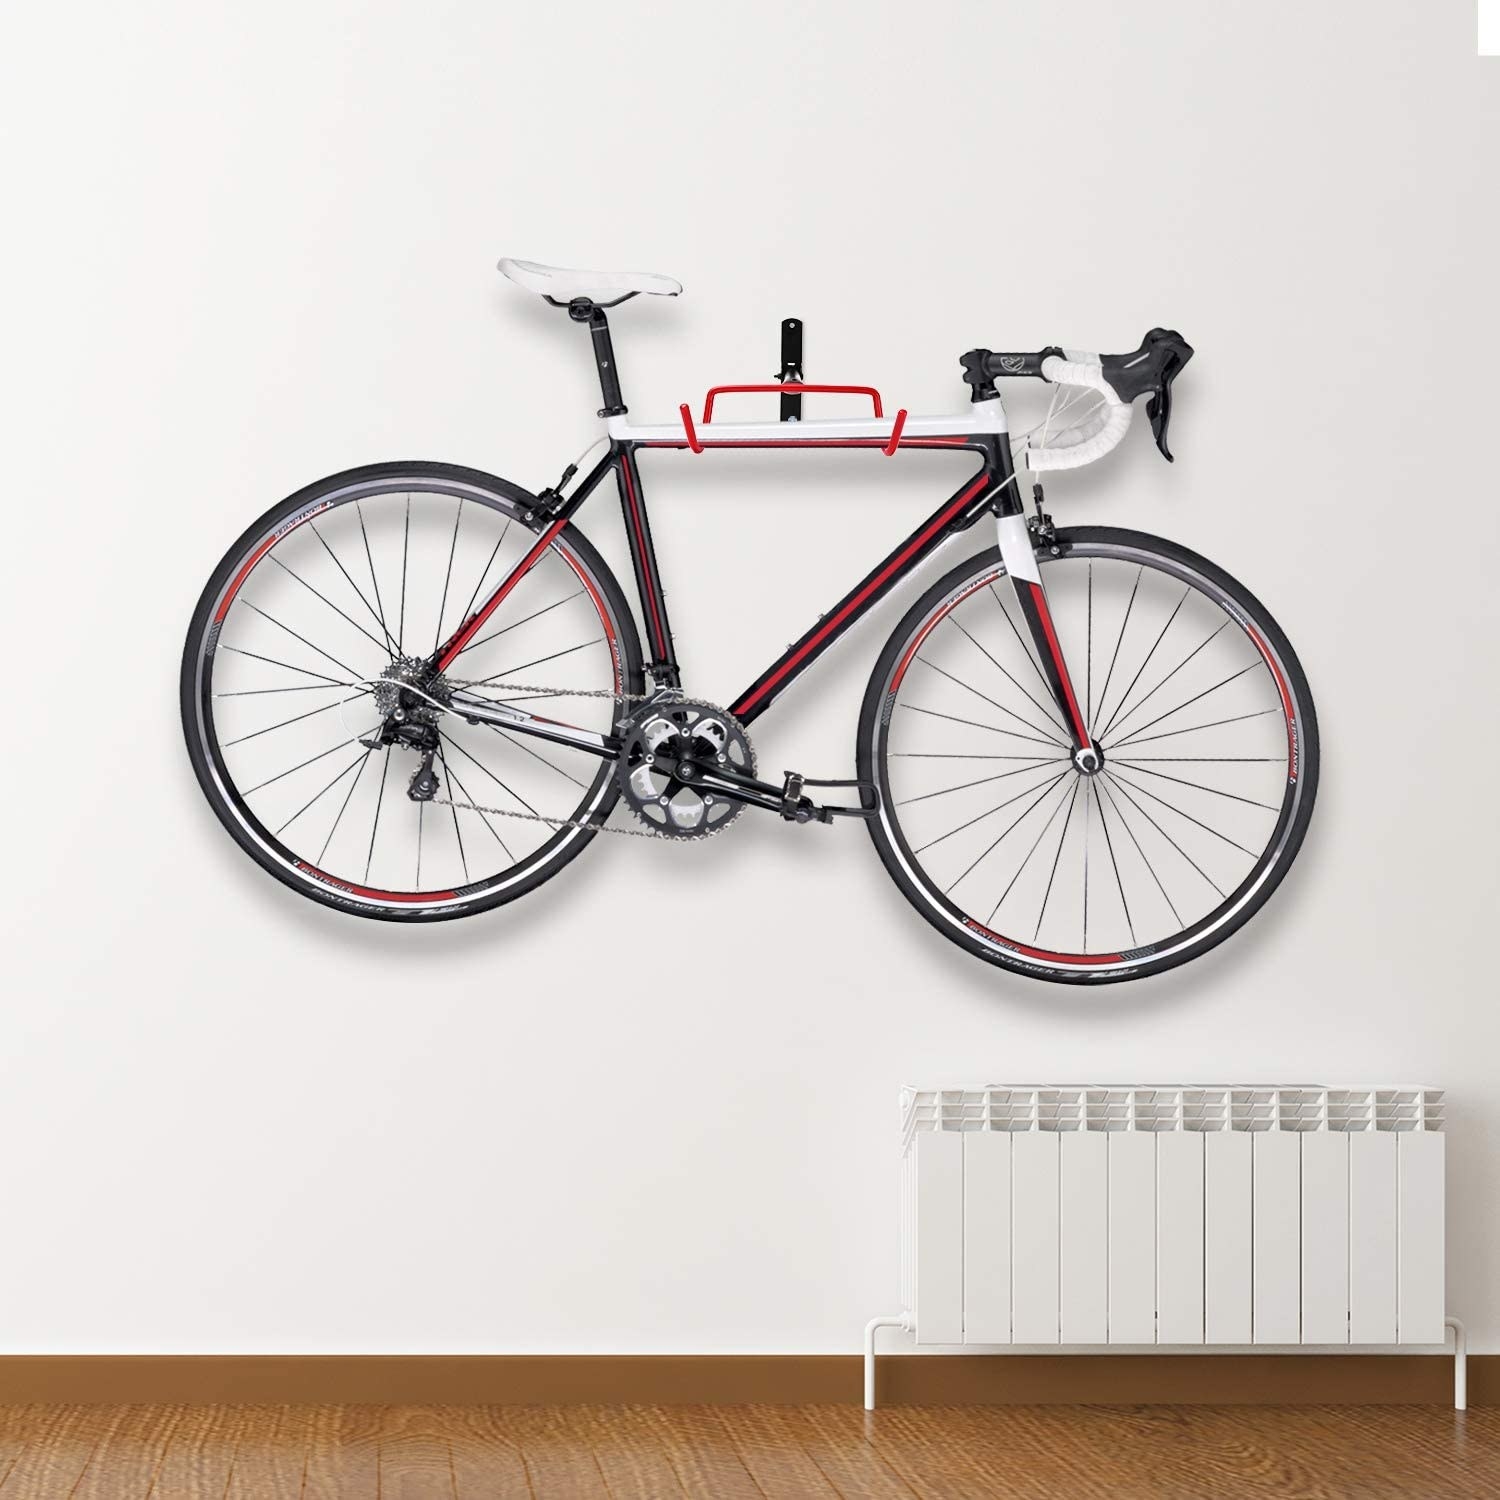 Gancho para acomodar bicicletas en el pared